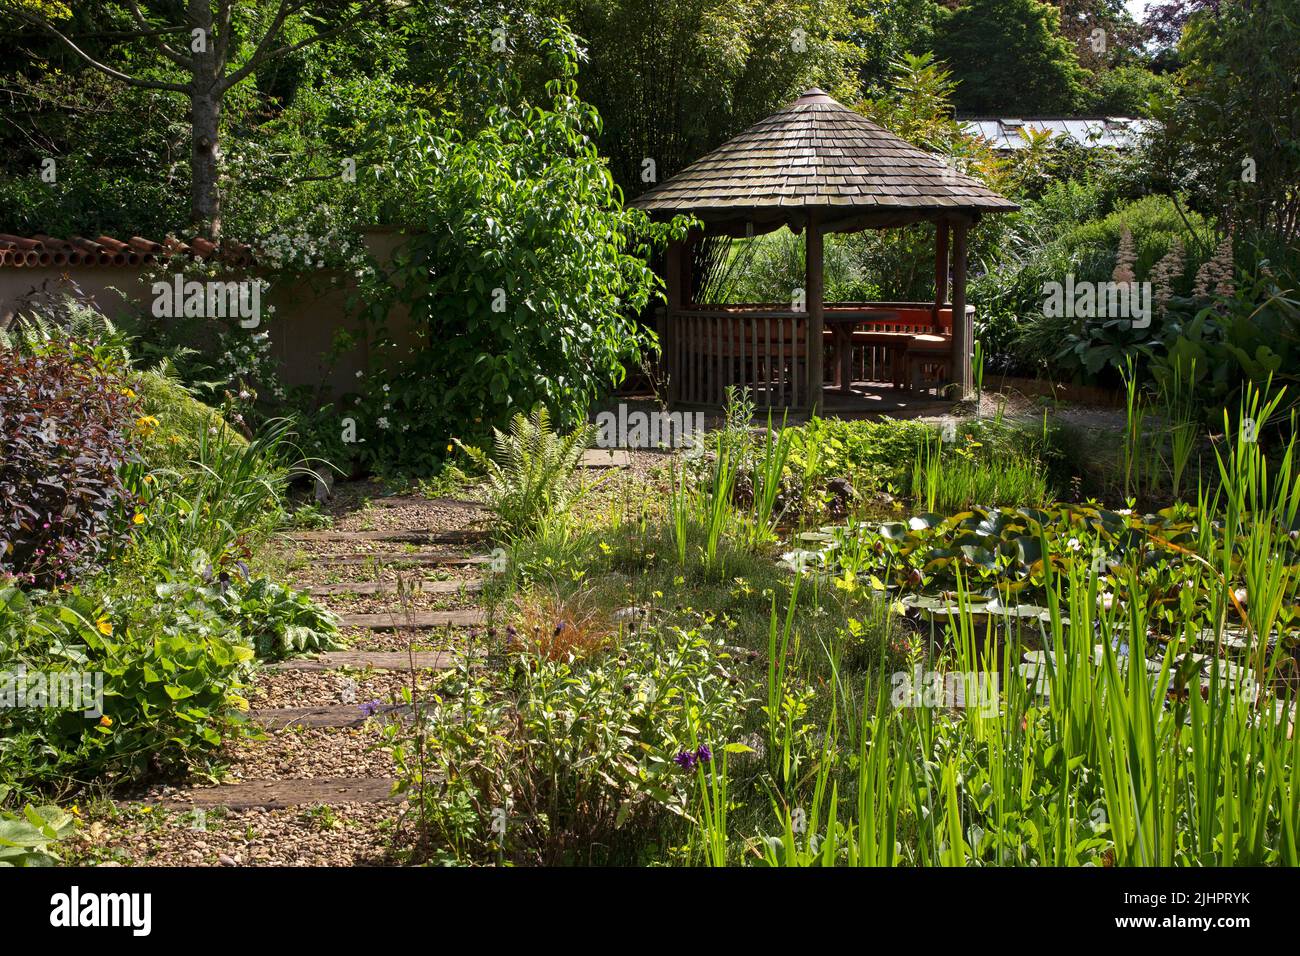 Giardino all'inglese con laghetto ornamentale con caratteristica Summerhouse e percorso in ghiaia con traversine in legno, Inghilterra Foto Stock